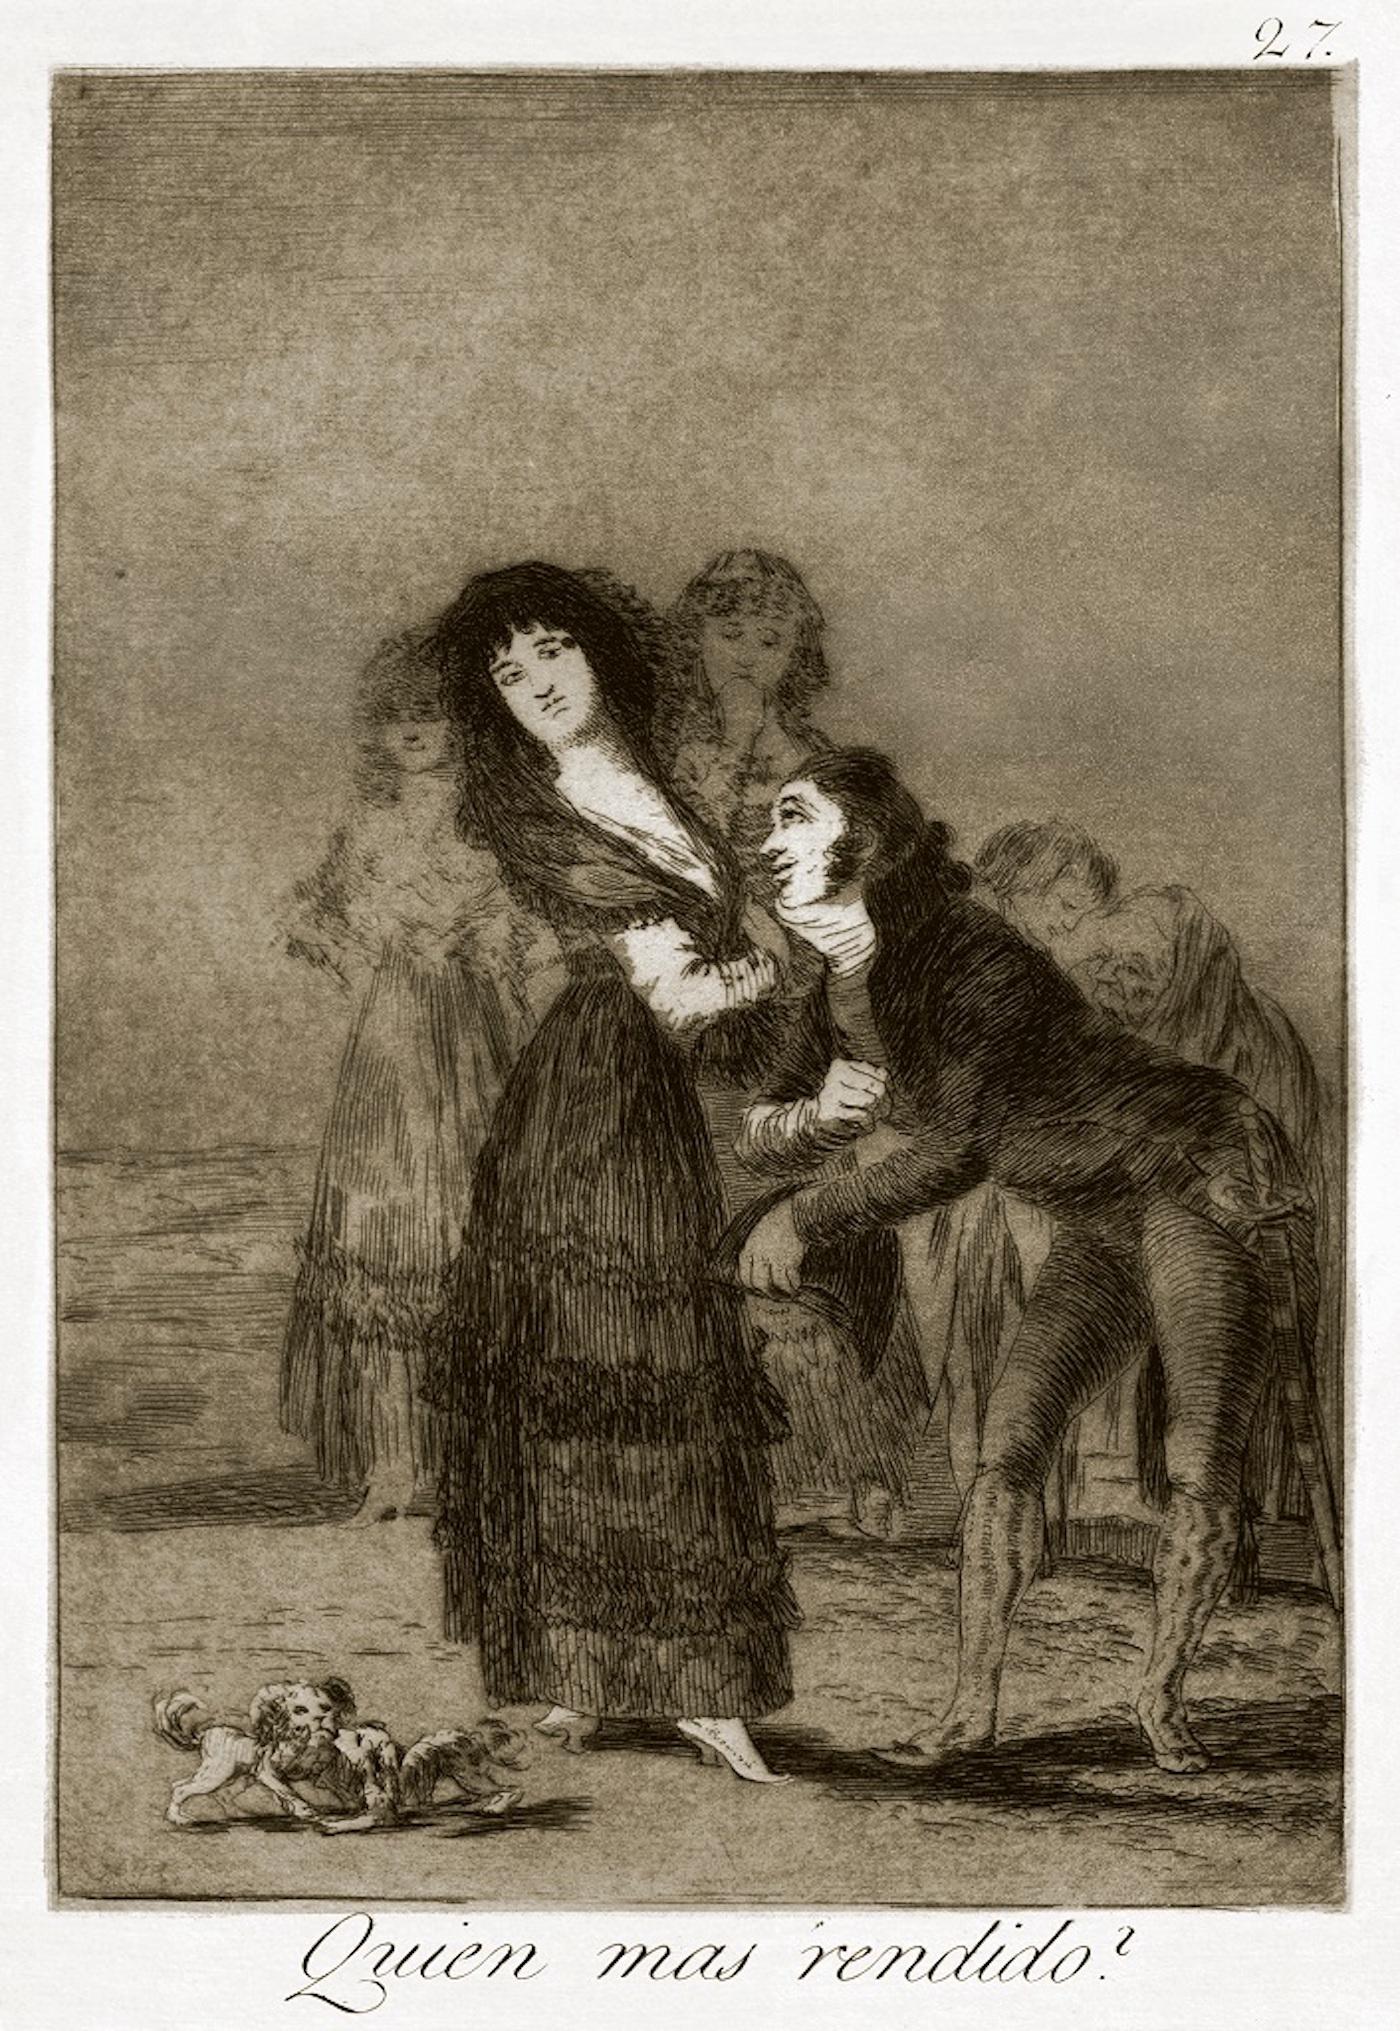 ¿Quién más rendido ? est une gravure originale réalisée par Francisco Goya et publiée pour la première fois en 1799.

Eau-forte sur papier vélin.

La plaque fait partie de la troisième édition de "Los Caprichos", publiée en 1868 par la Calcografia